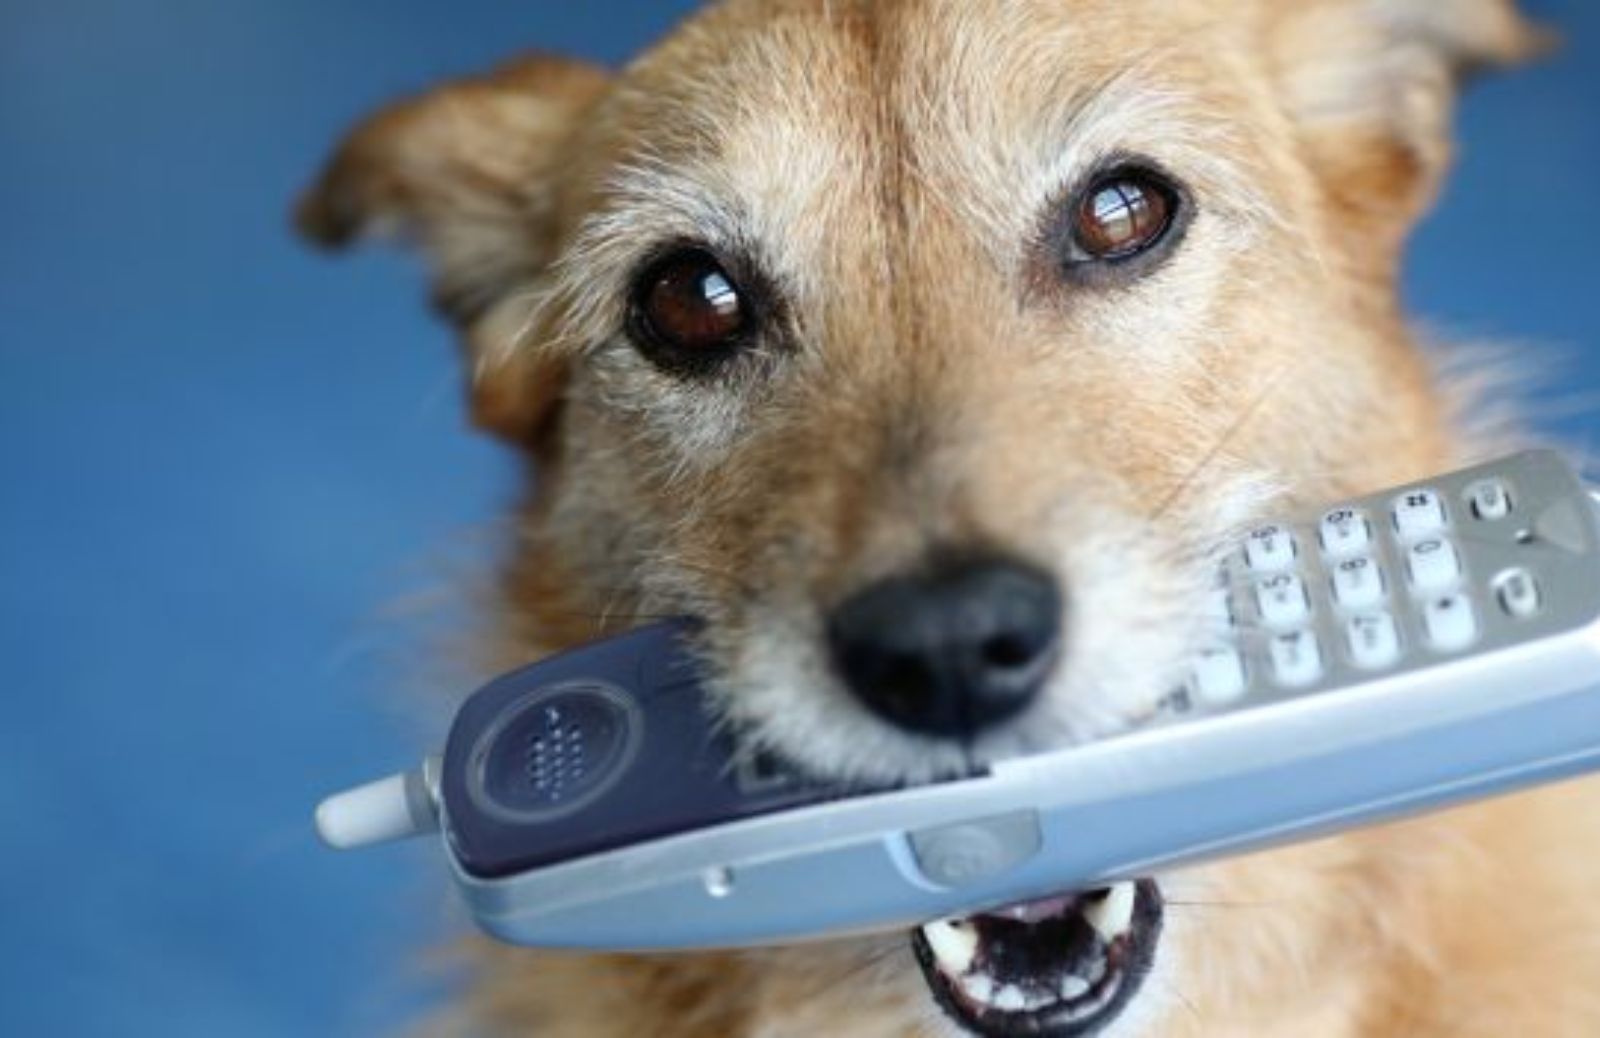 Come insegnare al cane a segnalare se il telefono squilla